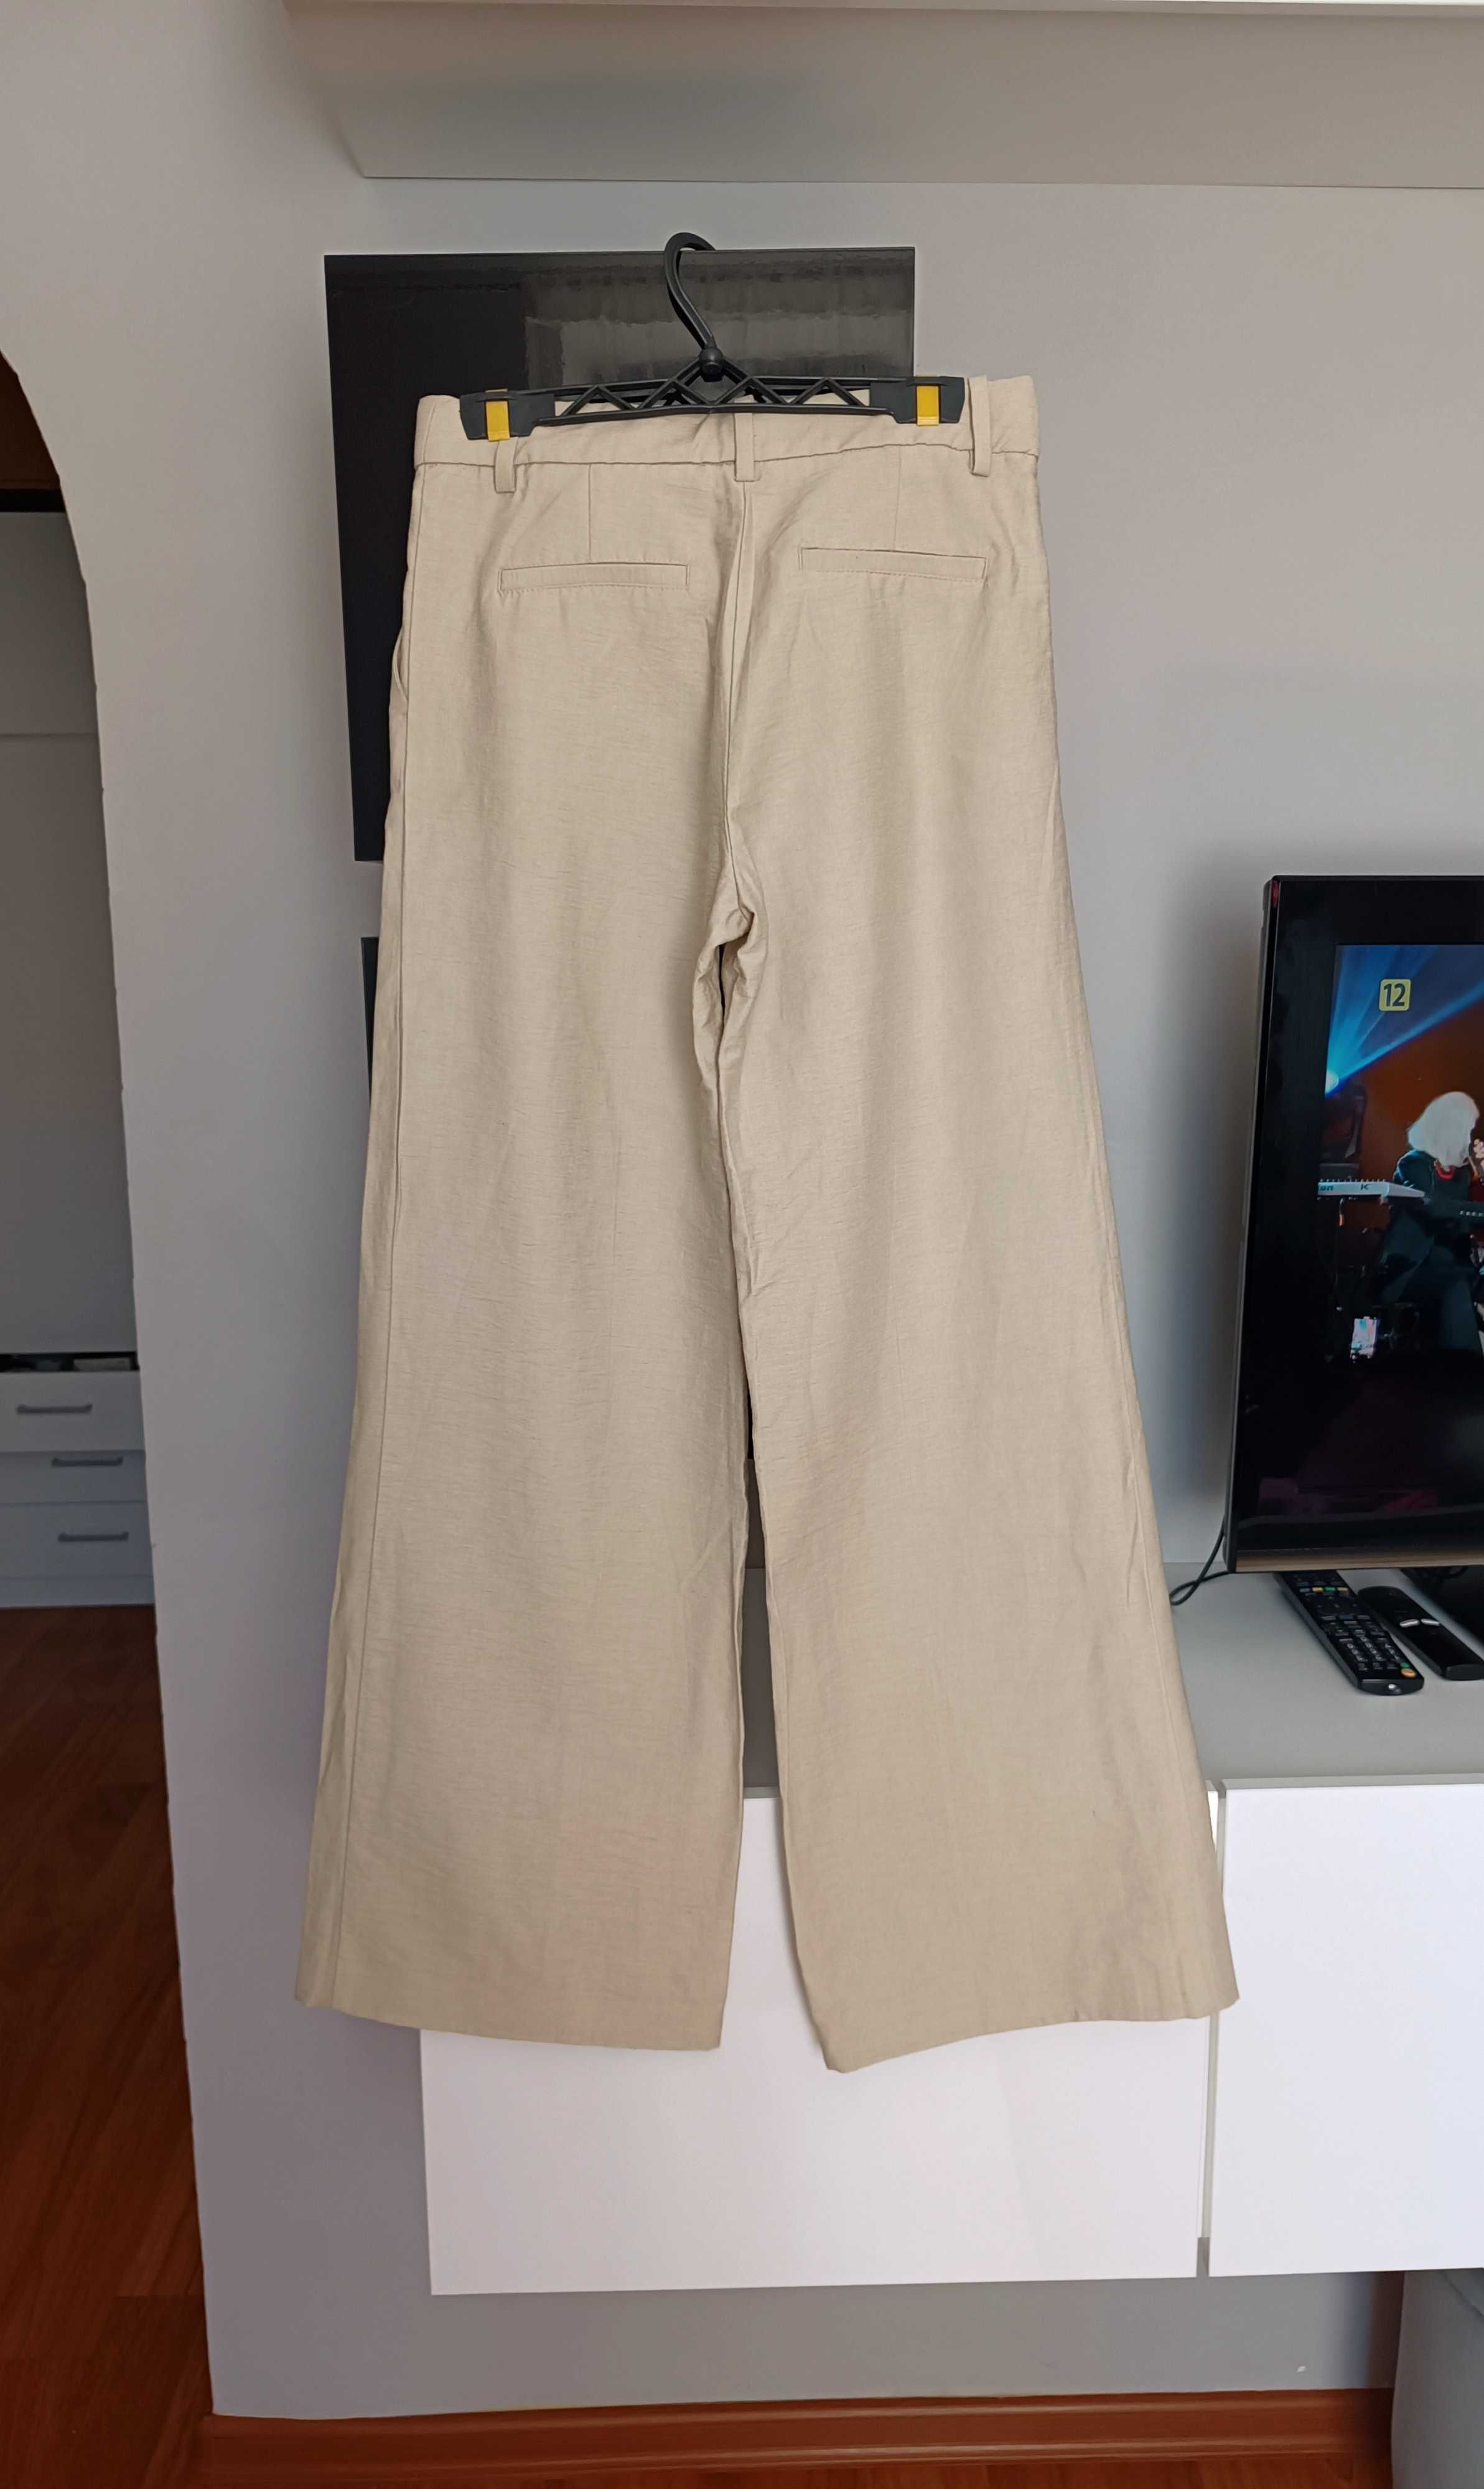 Nowe spodnie z lnem beżowe oliwkowe eleganckie szeroka nogawką H&M